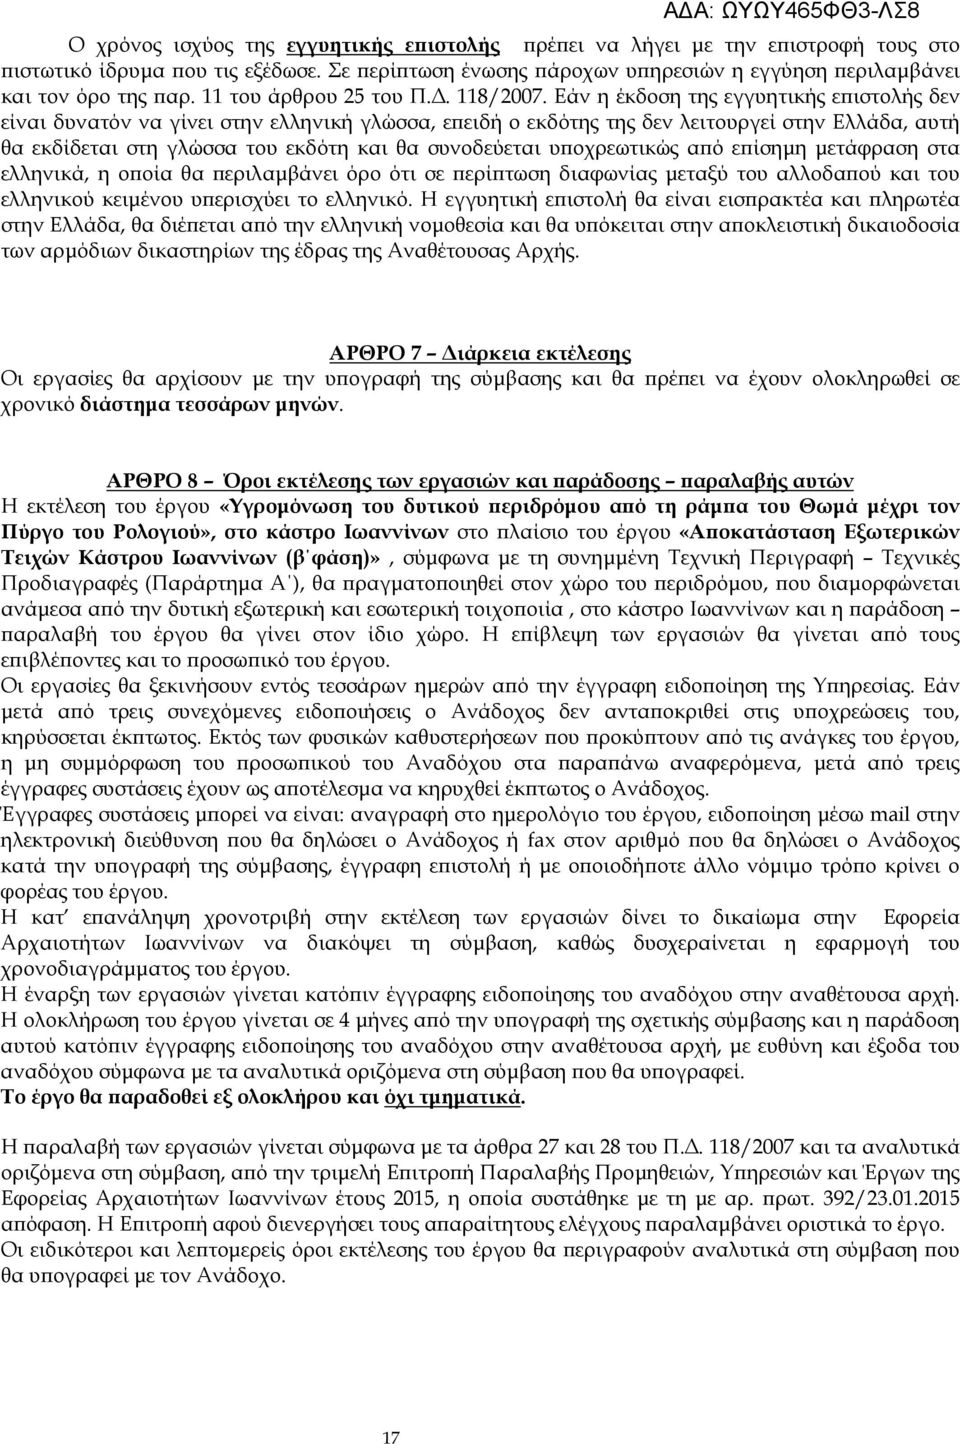 Εάν η έκδοση της εγγυητικής ε ιστολής δεν είναι δυνατόν να γίνει στην ελληνική γλώσσα, ε ειδή ο εκδότης της δεν λειτουργεί στην Ελλάδα, αυτή θα εκδίδεται στη γλώσσα του εκδότη και θα συνοδεύεται υ